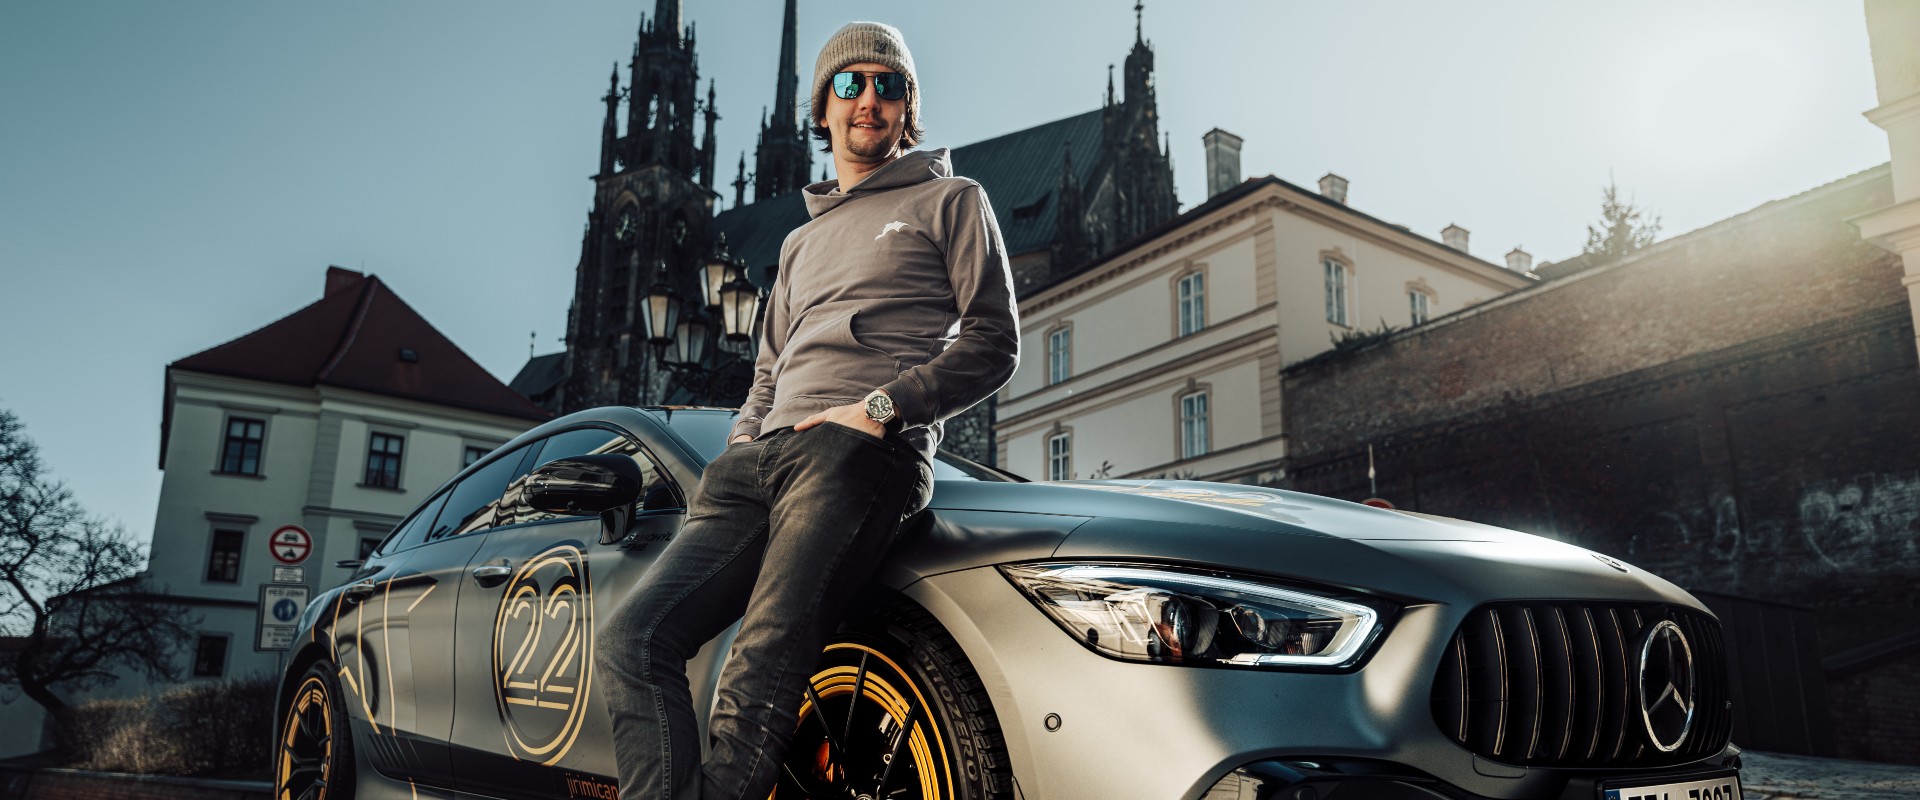 Jiří Mičánek je novým ambasadorem Mercedes-Benz, spojil se s autorizovaným prodejcem SAMOHÝL MB